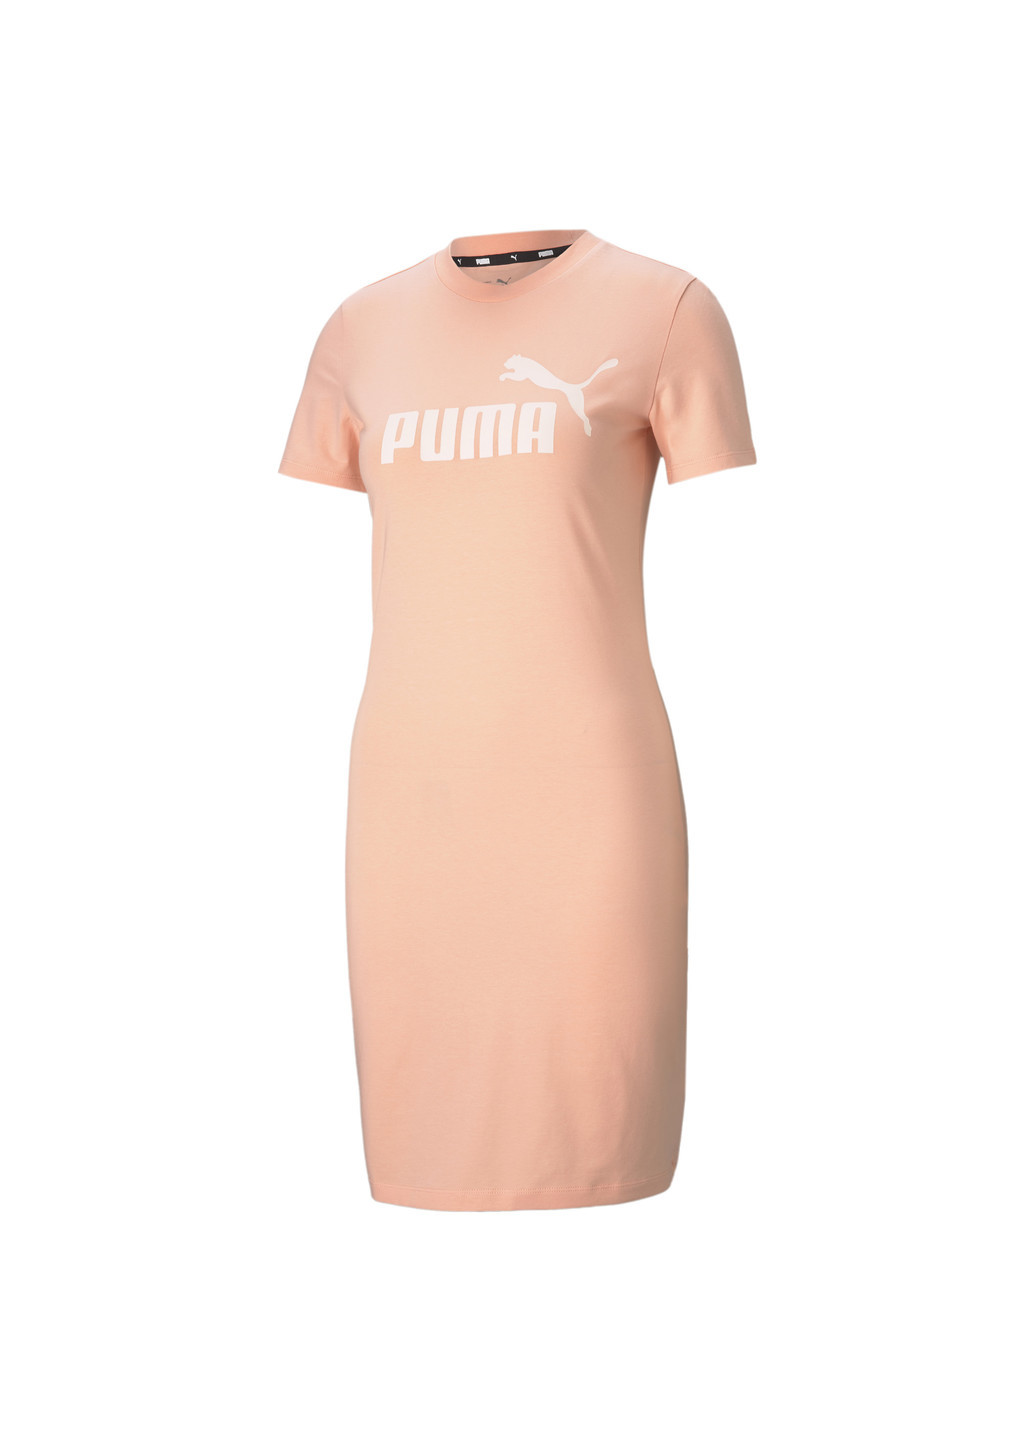 Розовое спортивное платье essentials slim women’s tee dress Puma однотонное